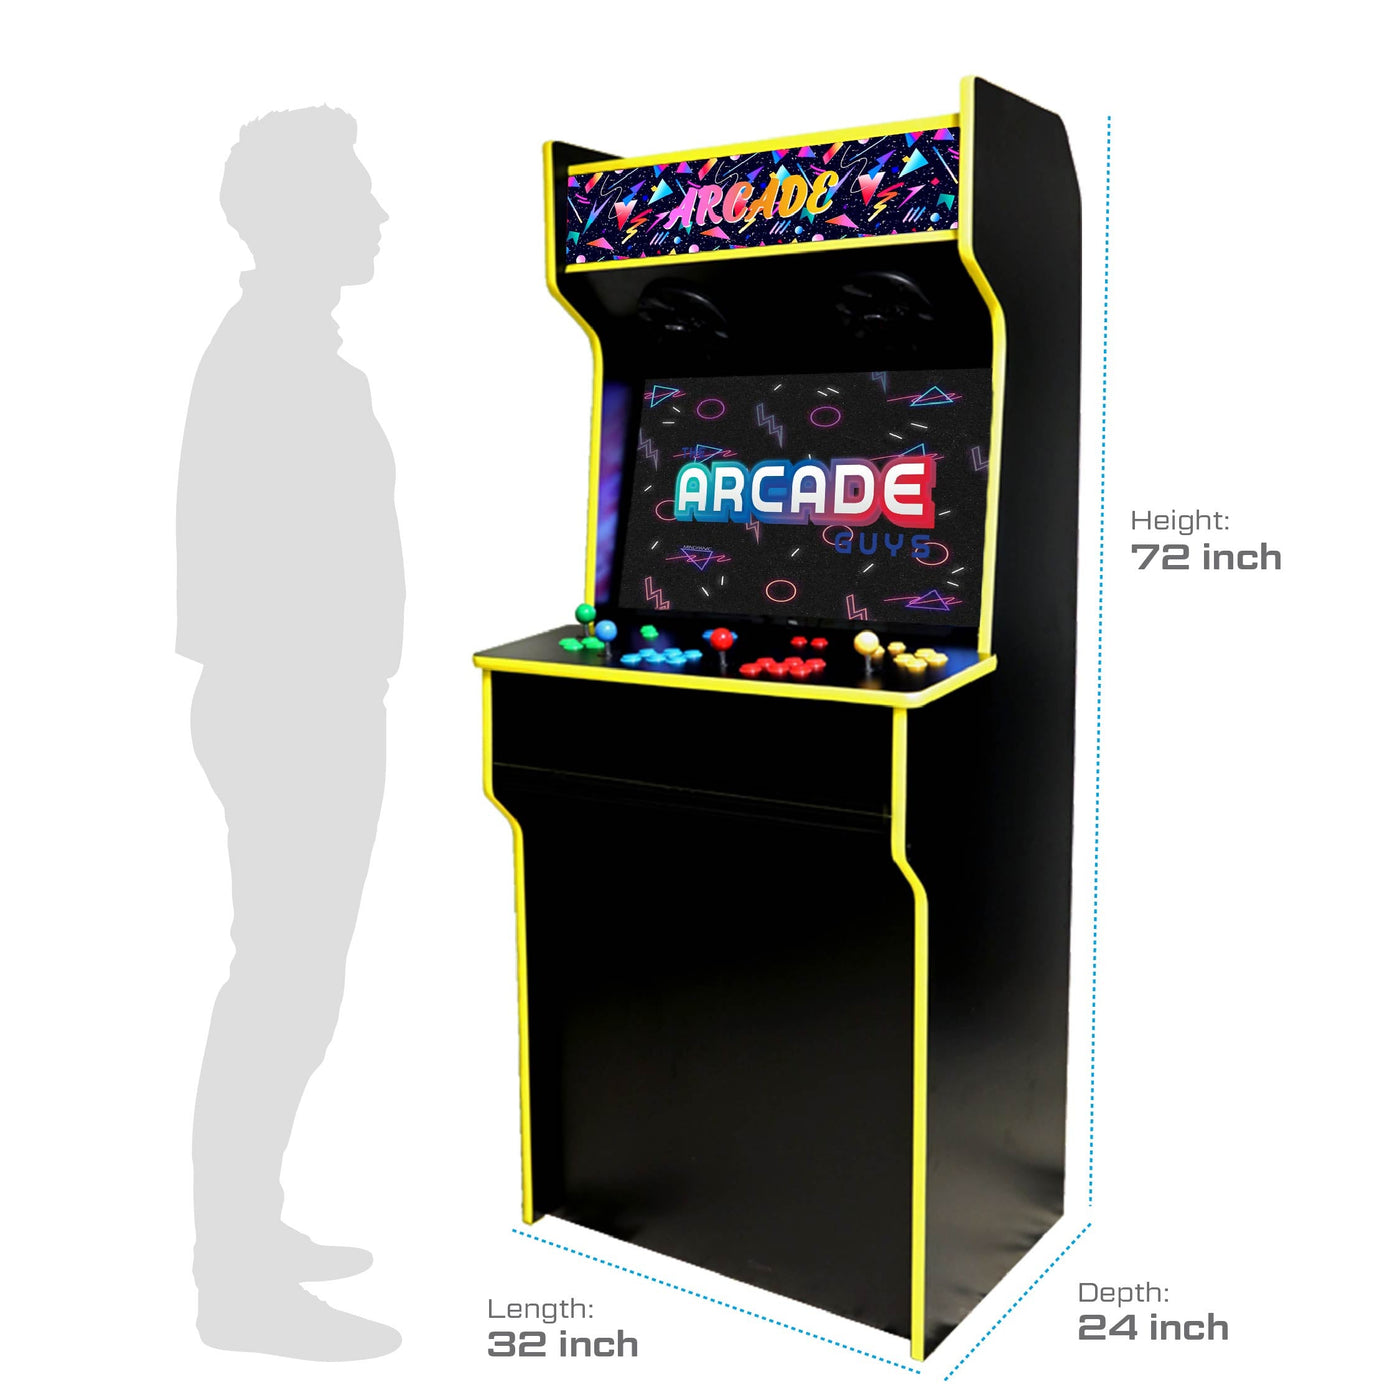  retro arcade cabinet size